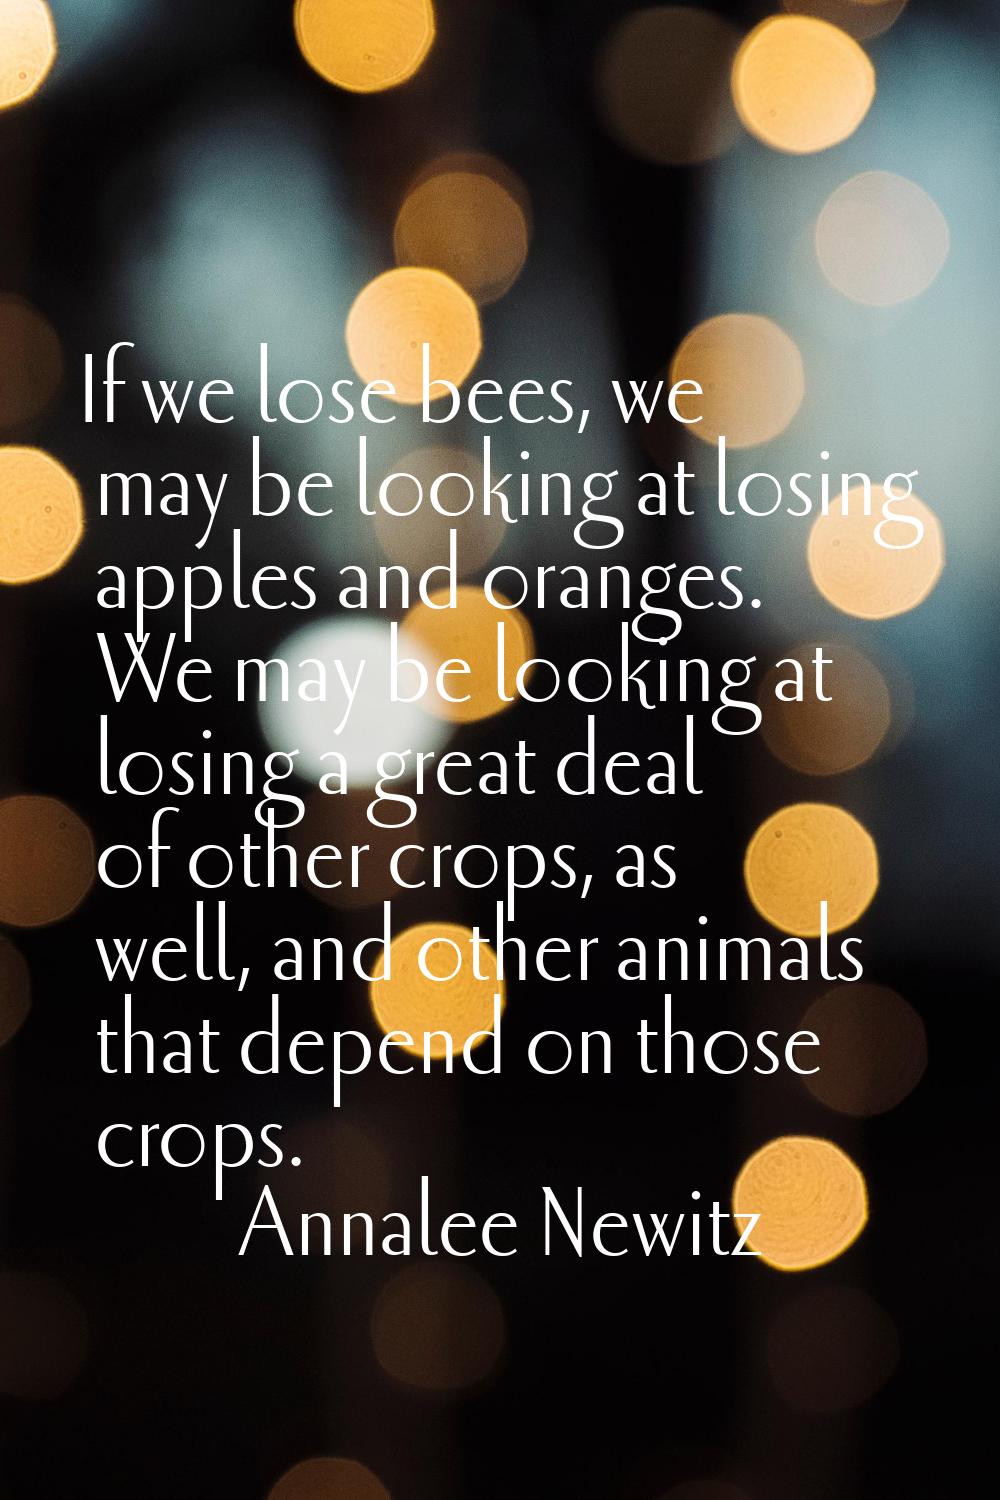 If we lose bees, we may be looking at losing apples and oranges. We may be looking at losing a grea